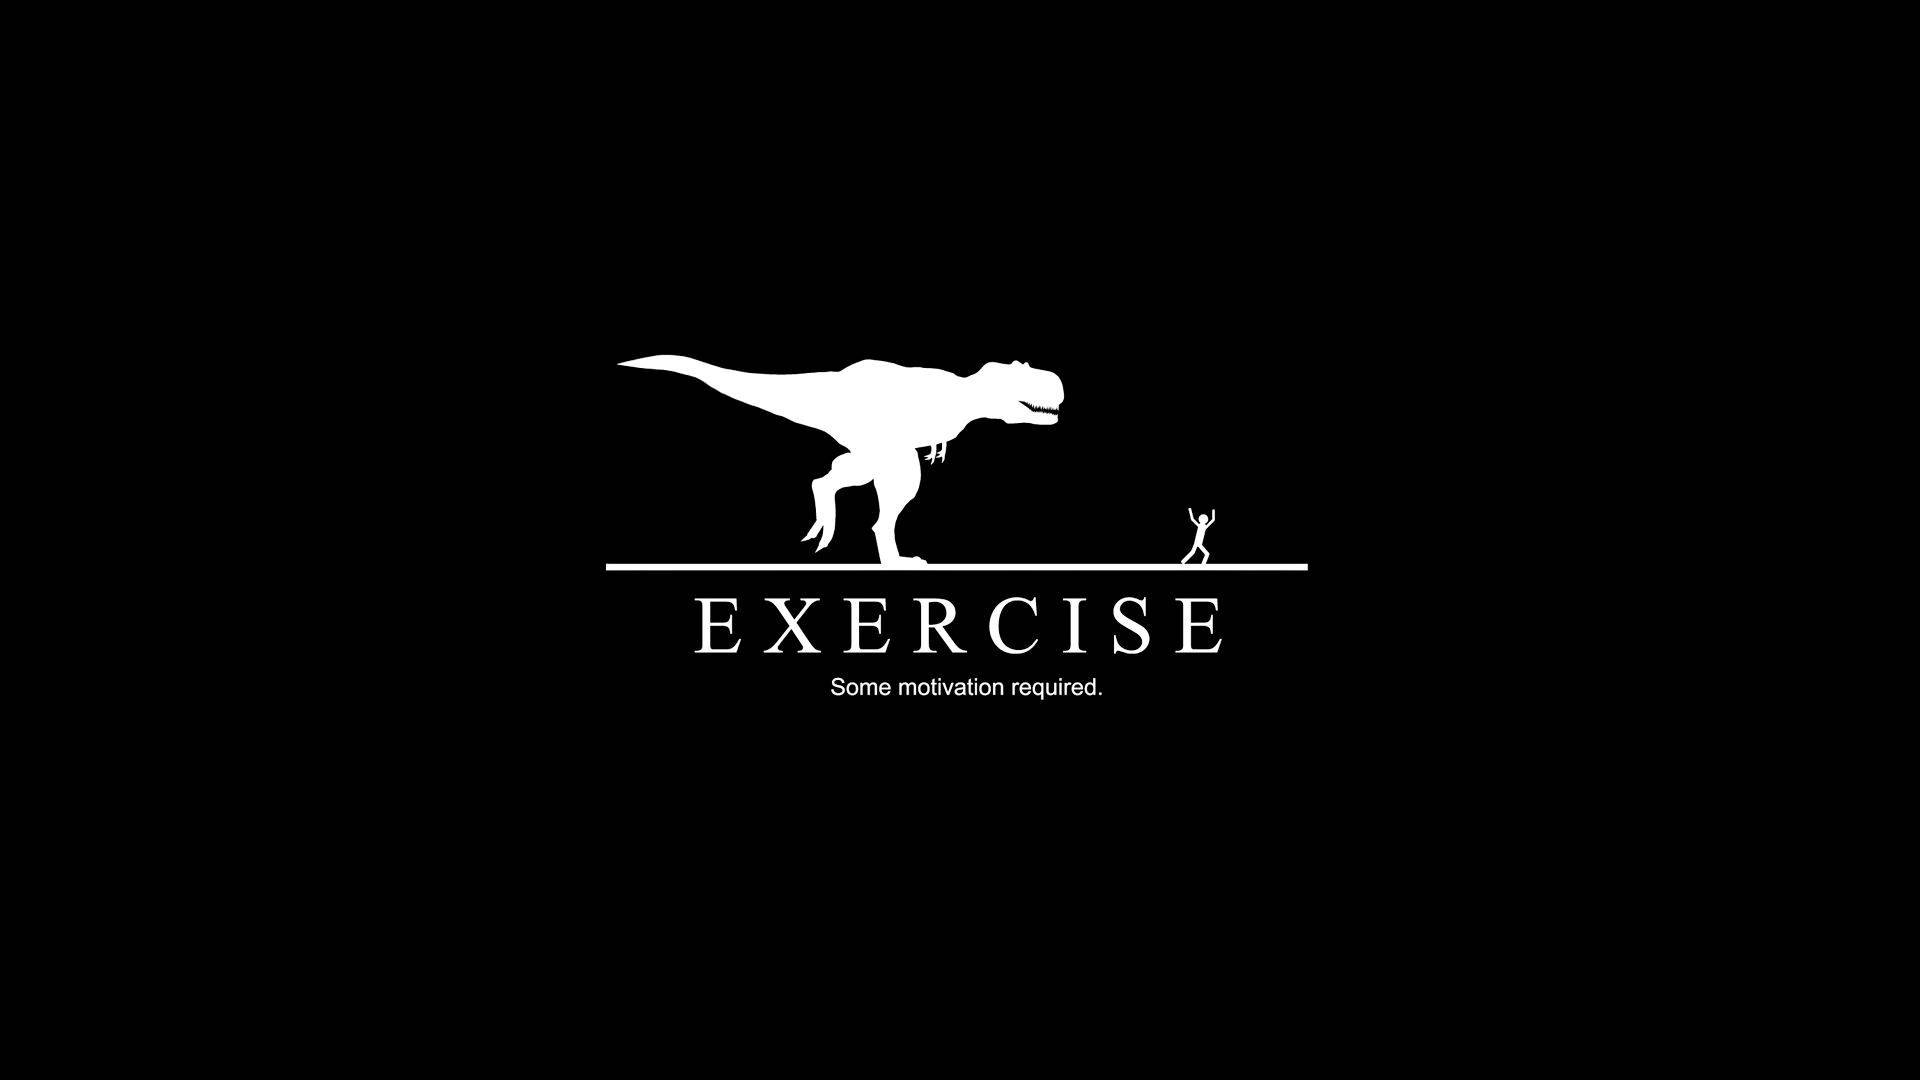 Inspirational Exercise Background